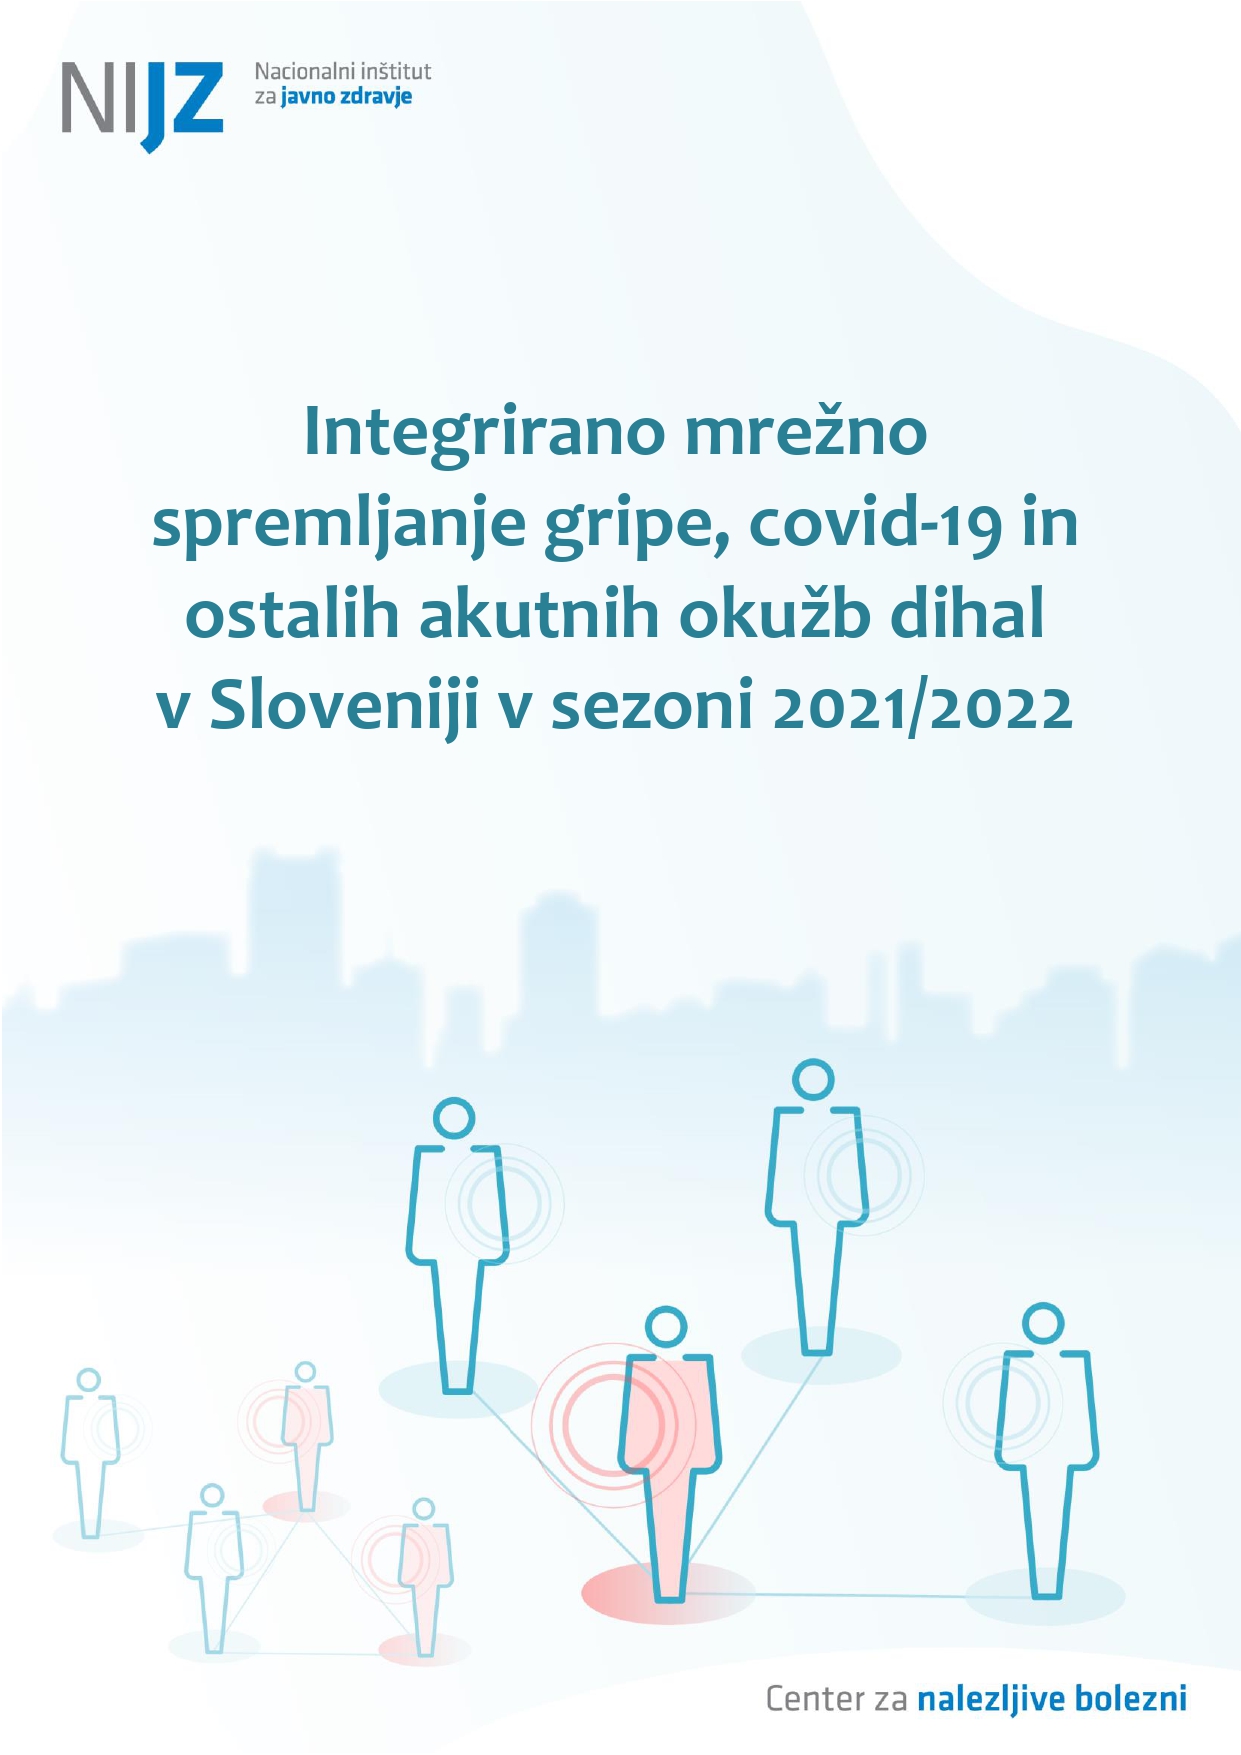 Integrirano mrežno spremljanje gripe, covid-19 in ostalih akutnih okužb dihal v Sloveniji v sezoni 2021/2022